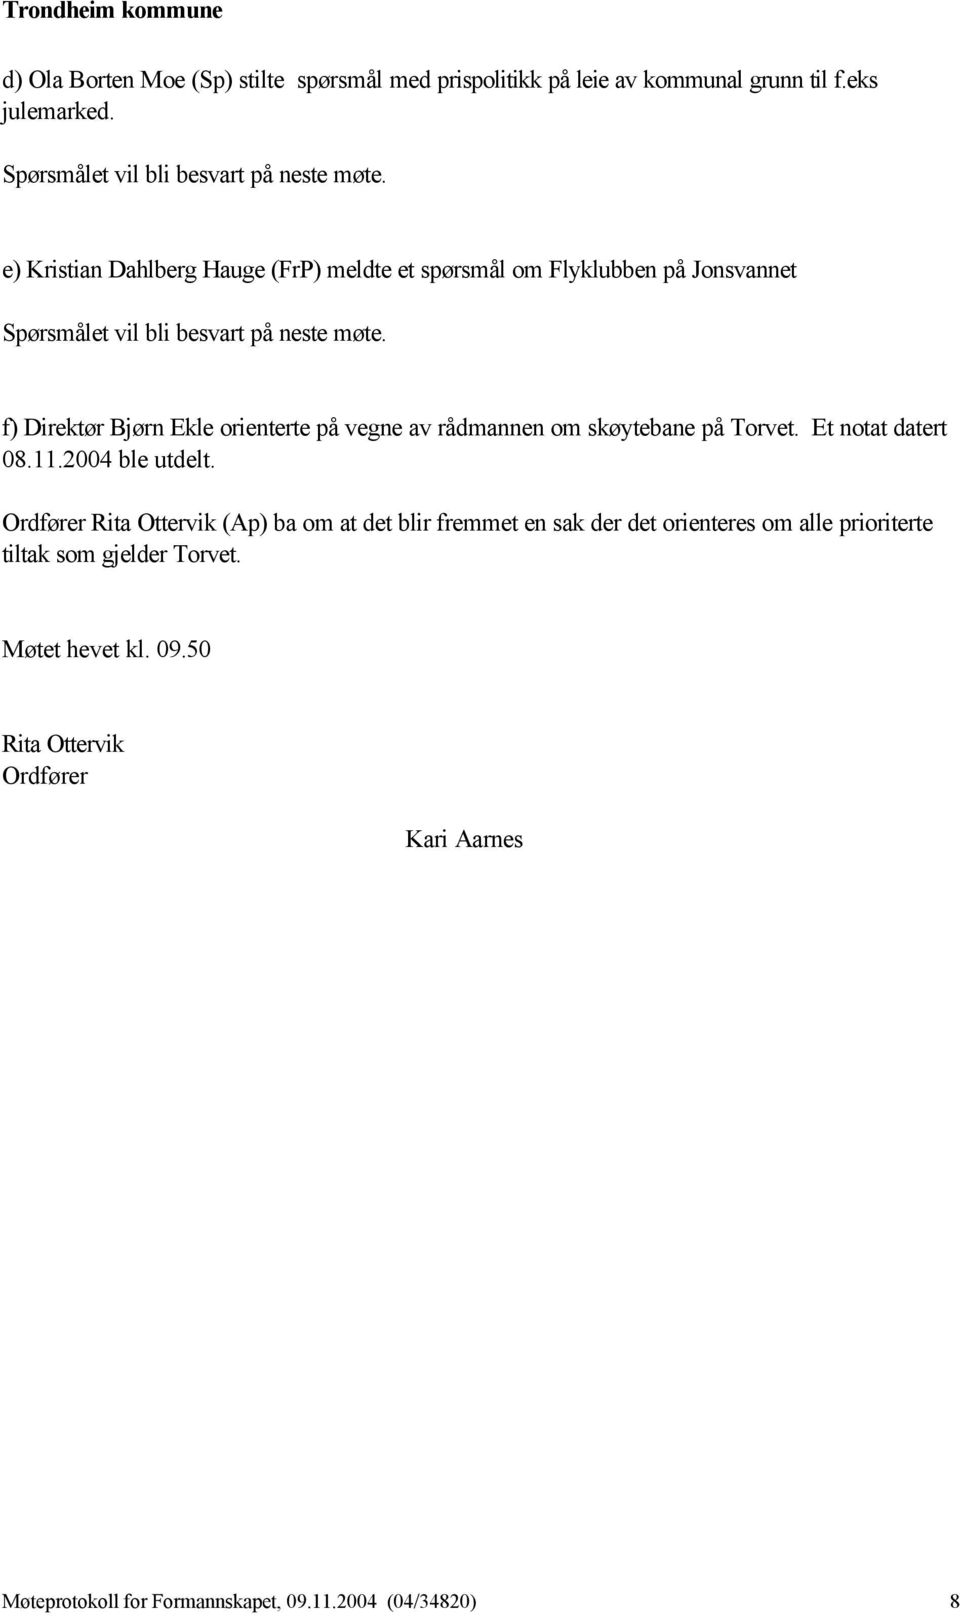 f) Direktør Bjørn Ekle orienterte på vegne av rådmannen om skøytebane på Torvet. Et notat datert 08.11.2004 ble utdelt.